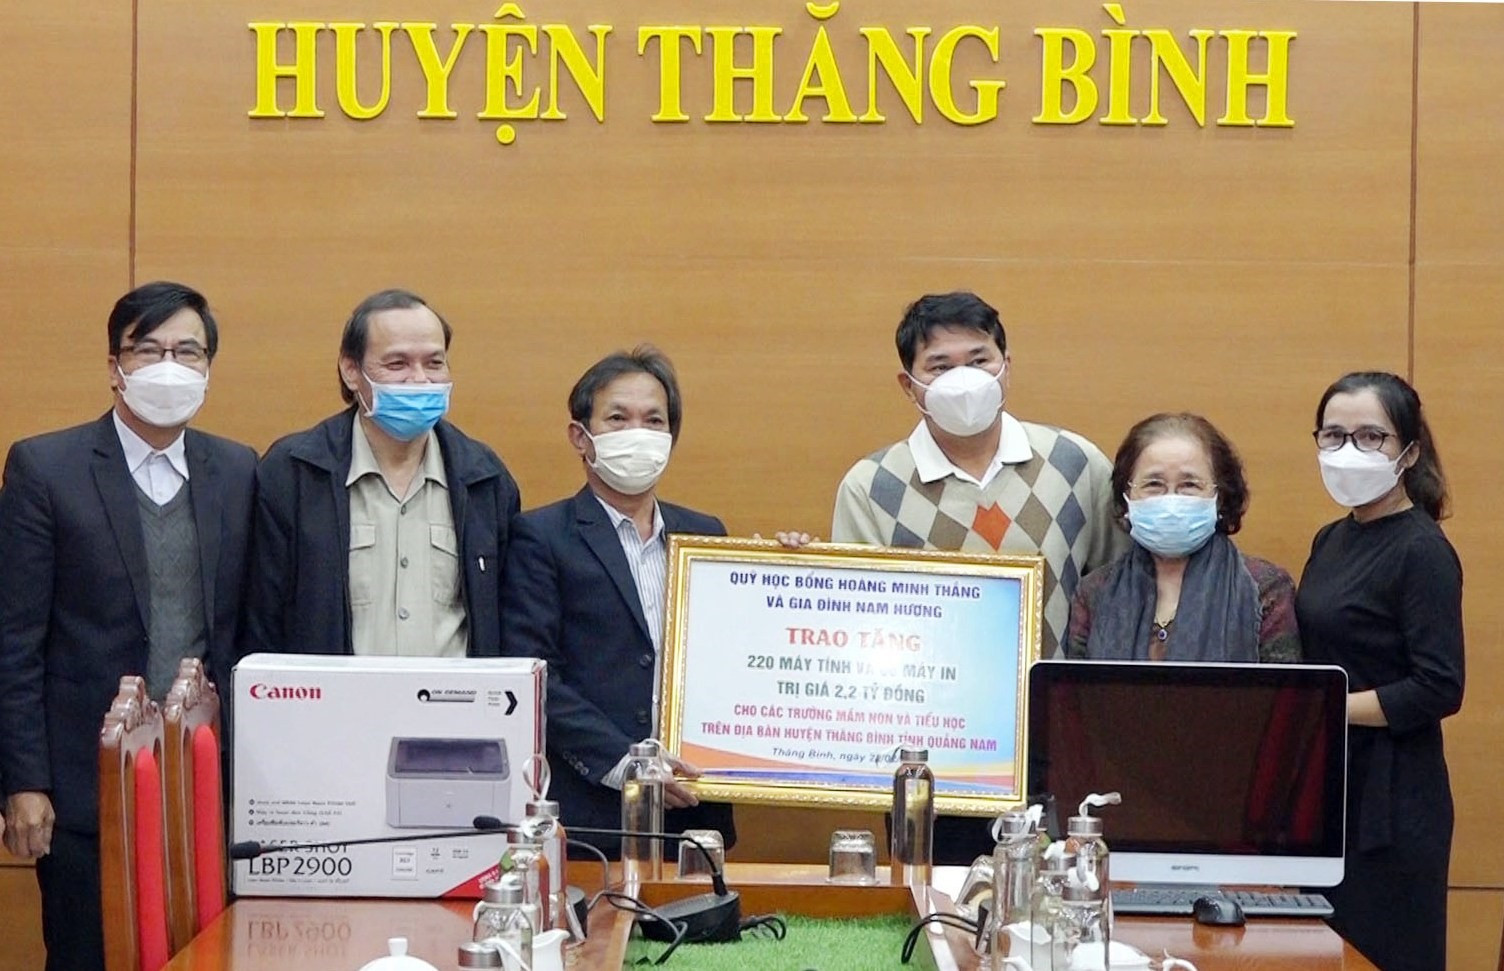 Ông Nguyễn Hoàng Nam (thứ 3 từ phải qua) trao biểu trưng tặng máy tính và máy in cho lãnh đạo huyện Thăng Bình. Ảnh: T.N